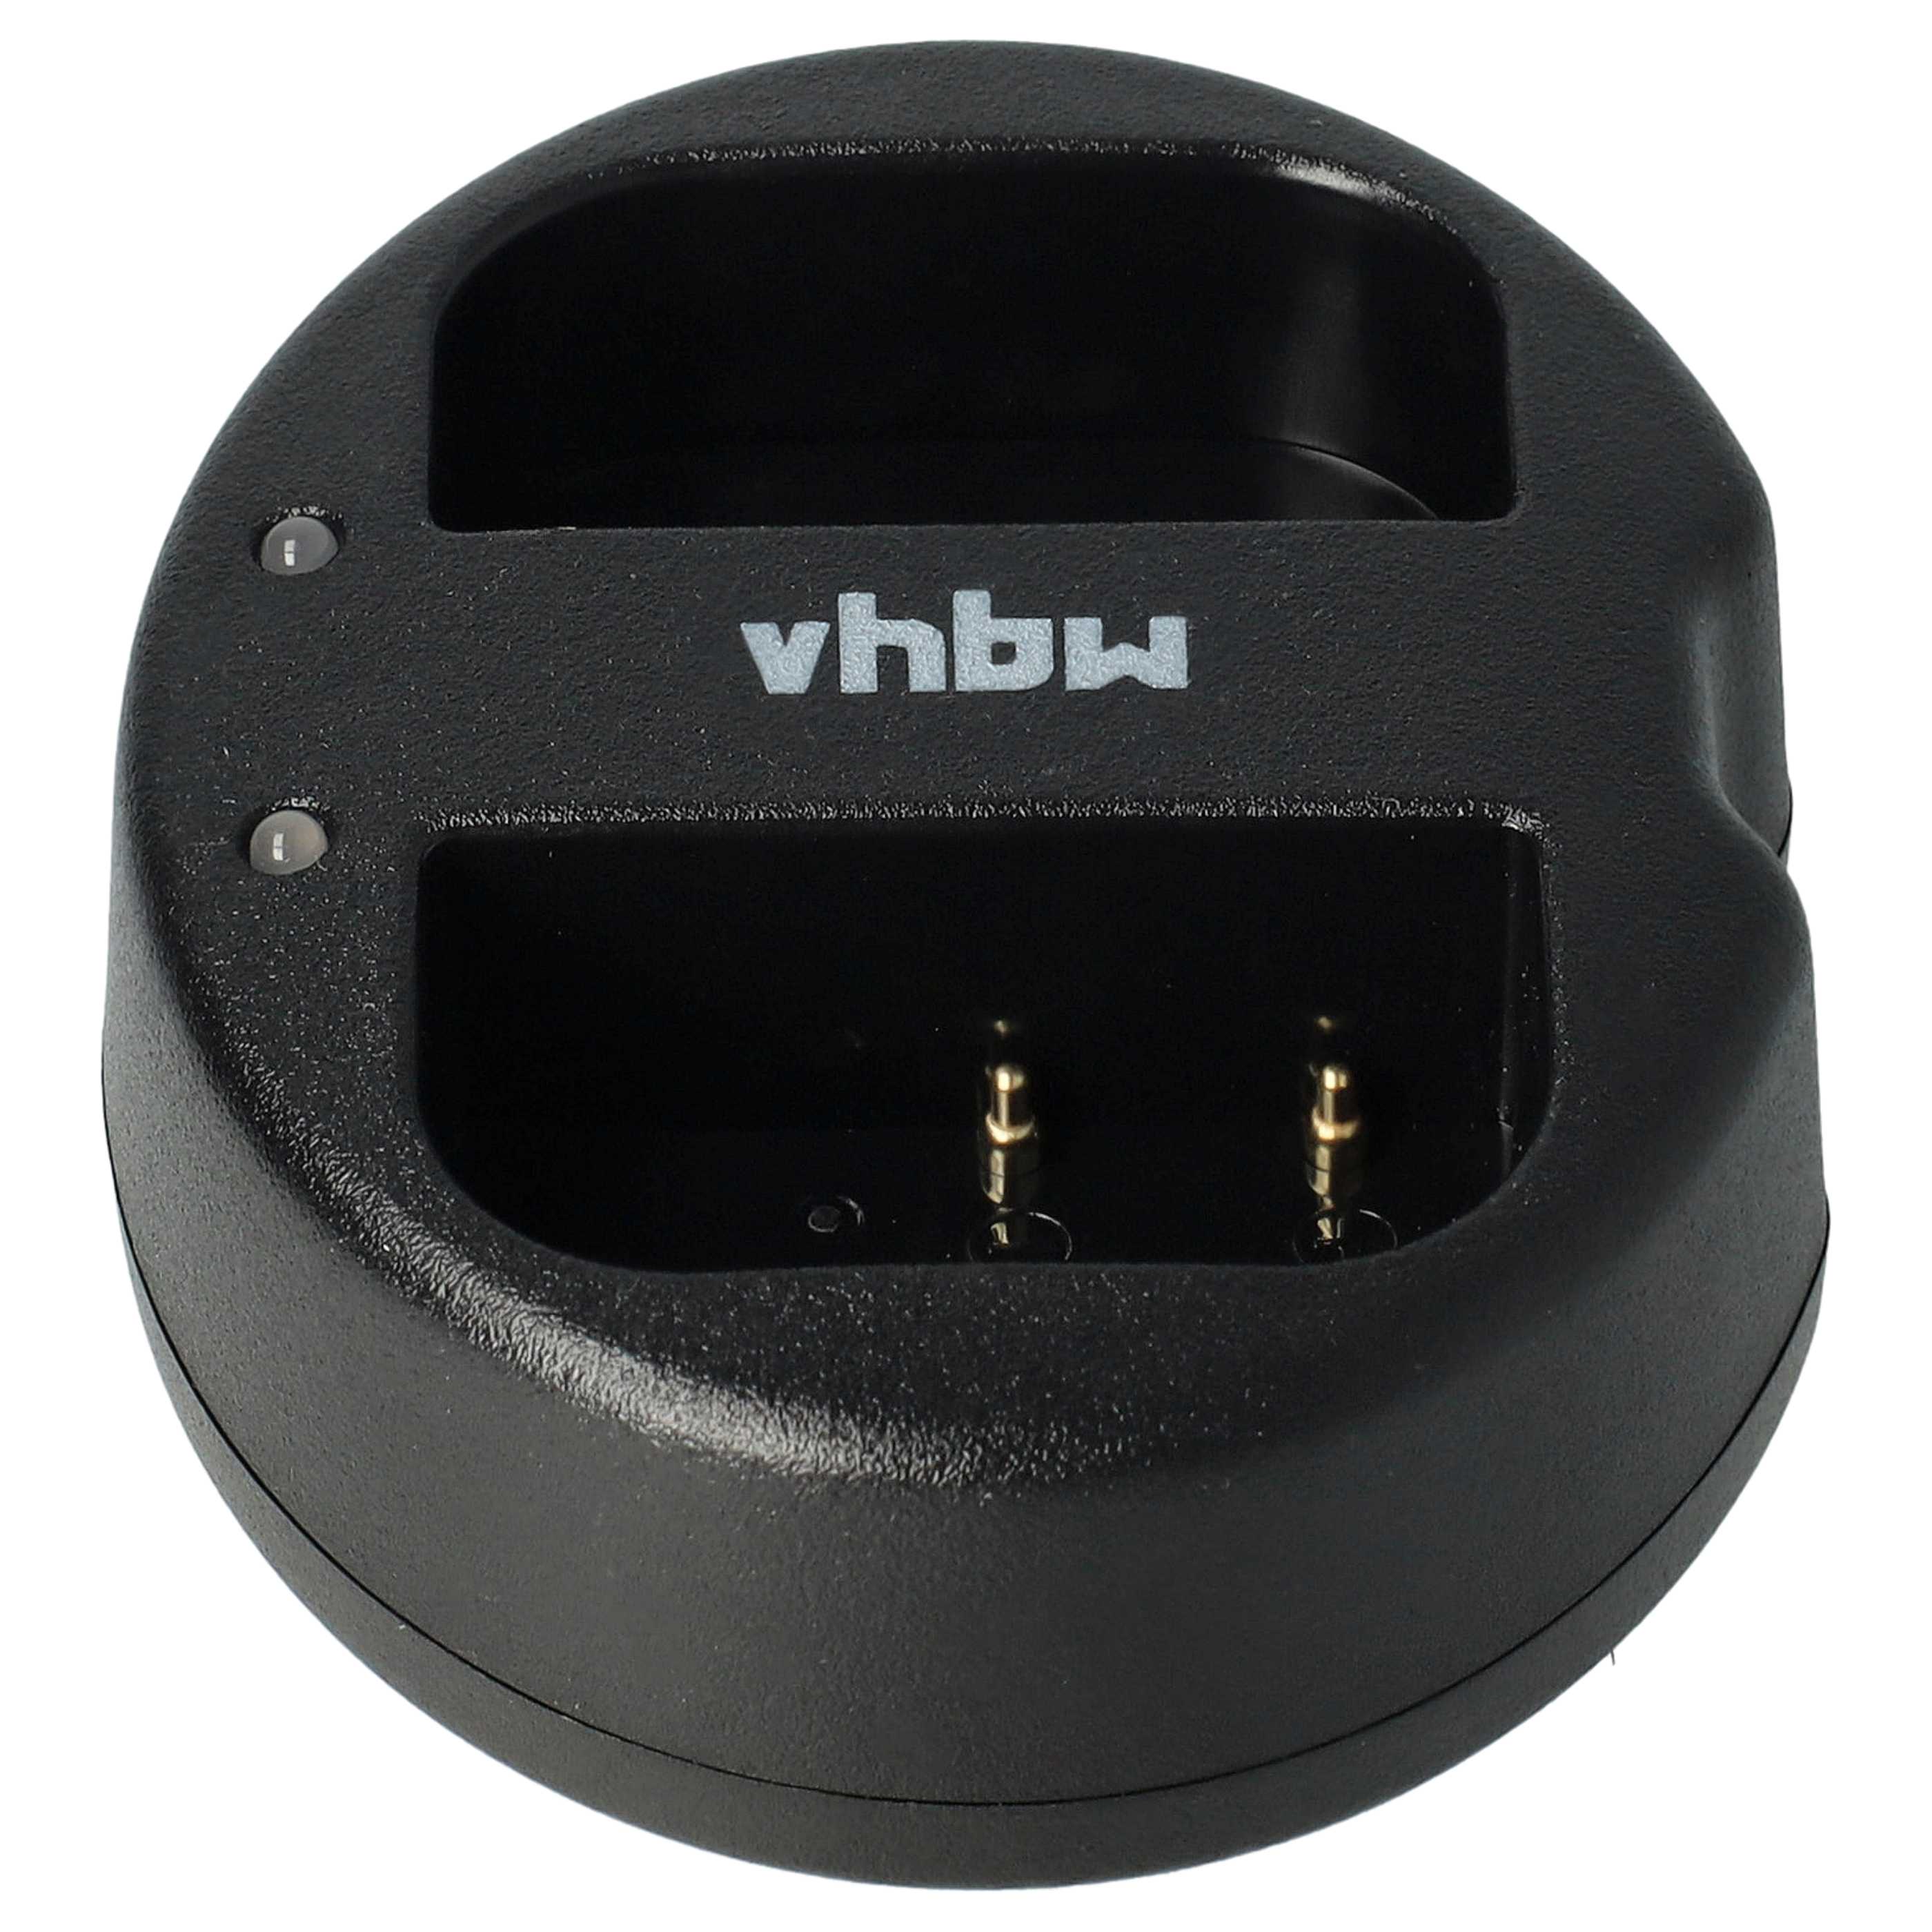 Cargador para cámara Lumix - 0,6A 8,4V 77,5cm